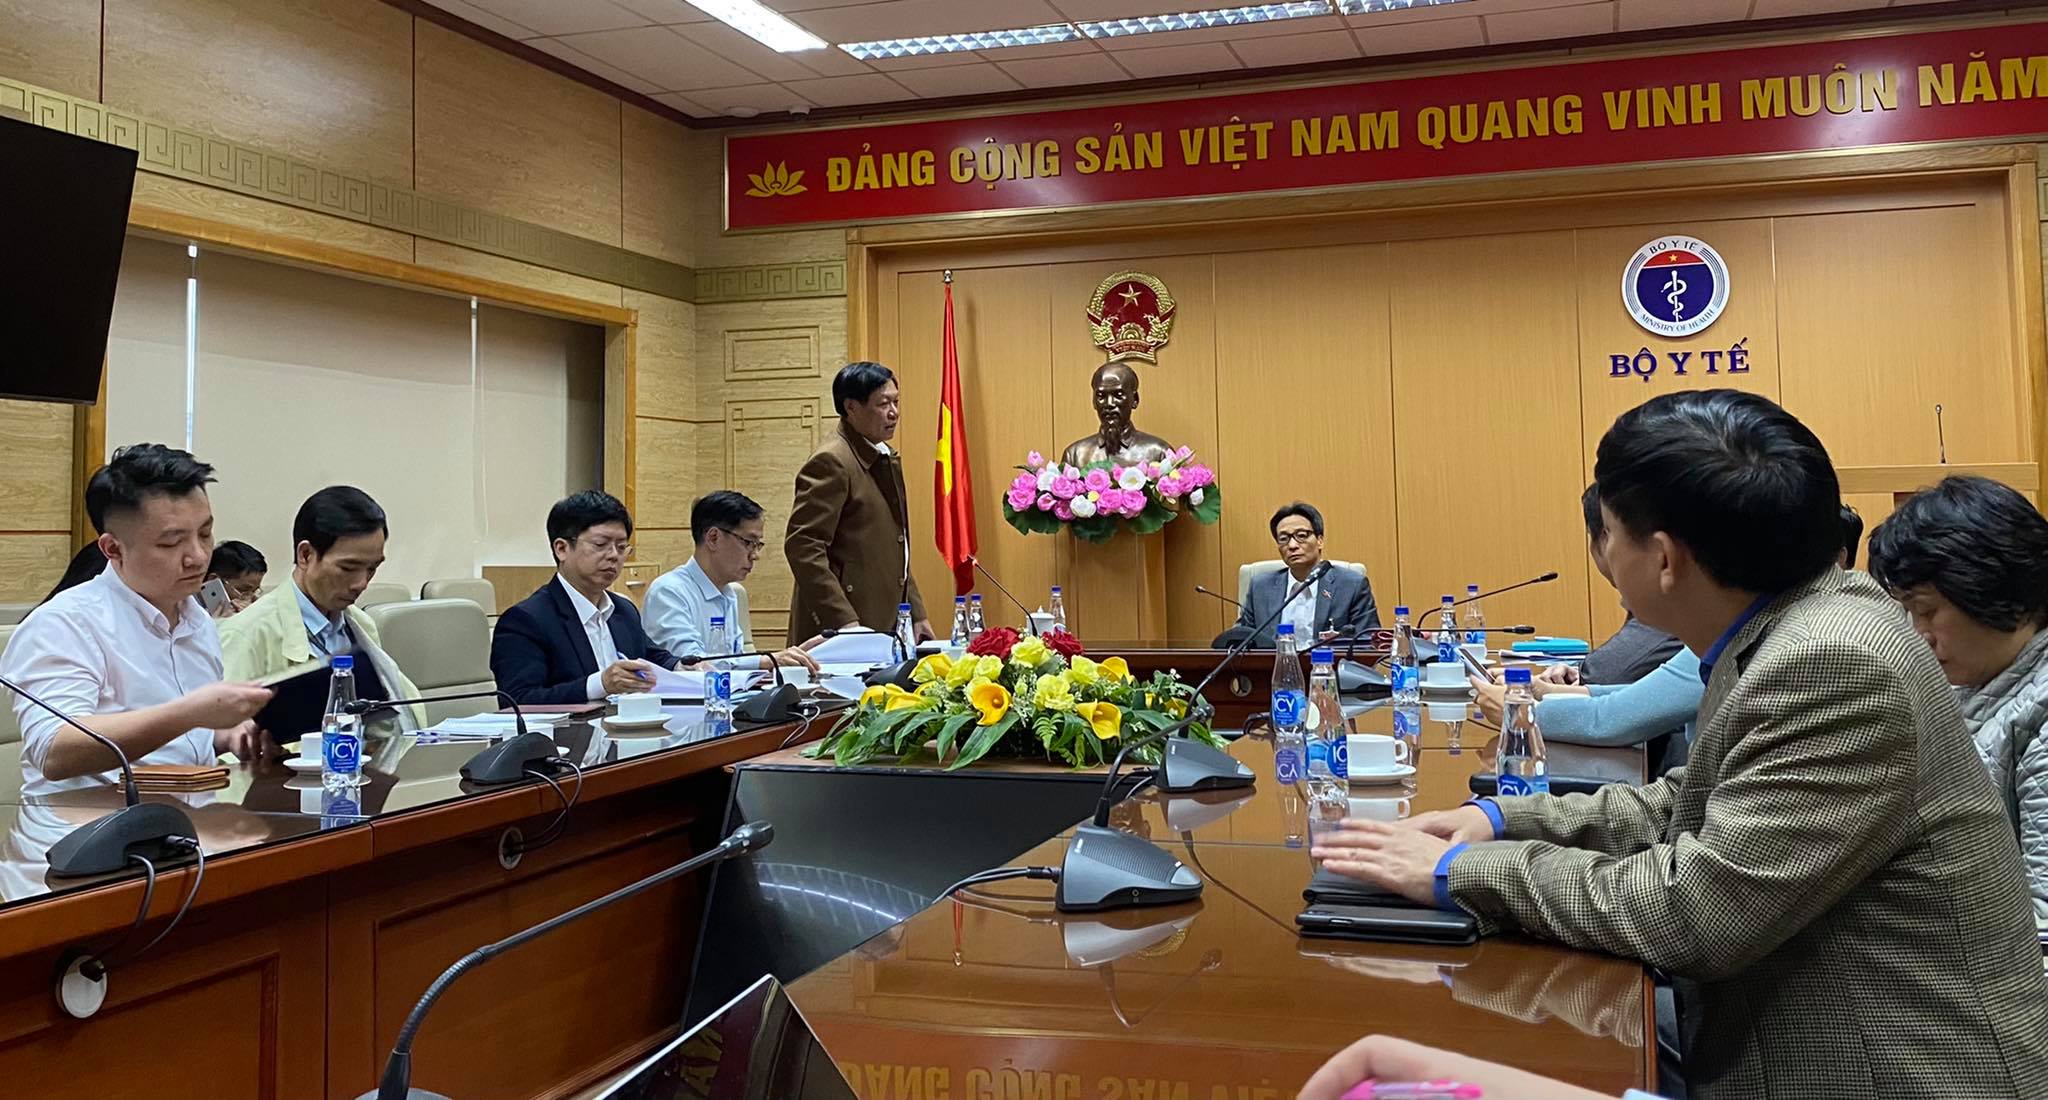 Phó Thủ tướng Vũ Đức Đam họp với Bộ Y tế chiều 27/1 ngay sau khi có thông tin về các ca nhiễm ở Hải Dương, Quảng Ninh